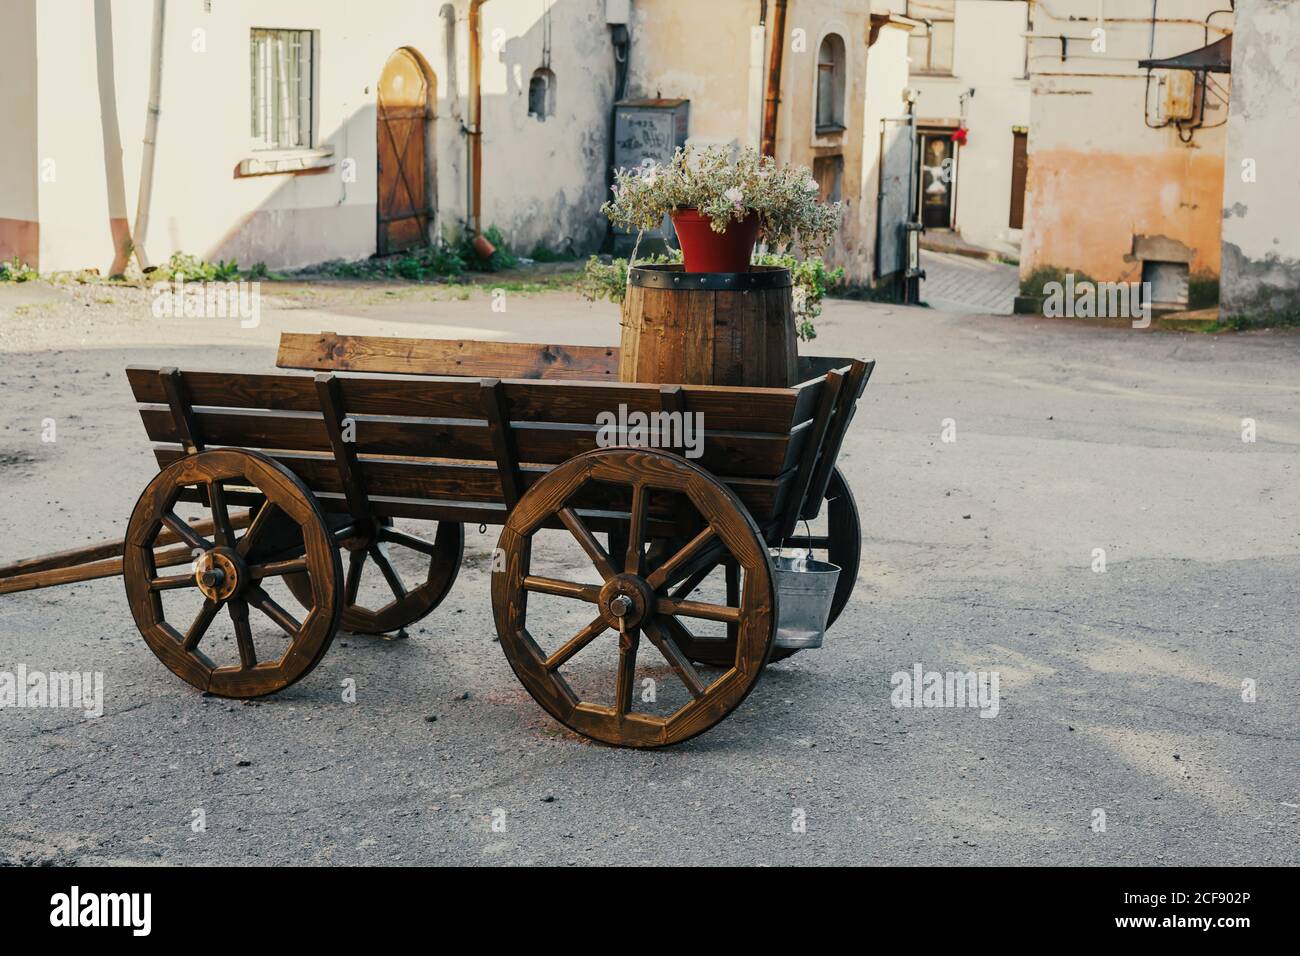 Hölzerne altmodische Wagen, dekorative Retro-Wagen im Hof, Vintage-Stand für Blumen, Garten Dekor Ideen Stockfoto